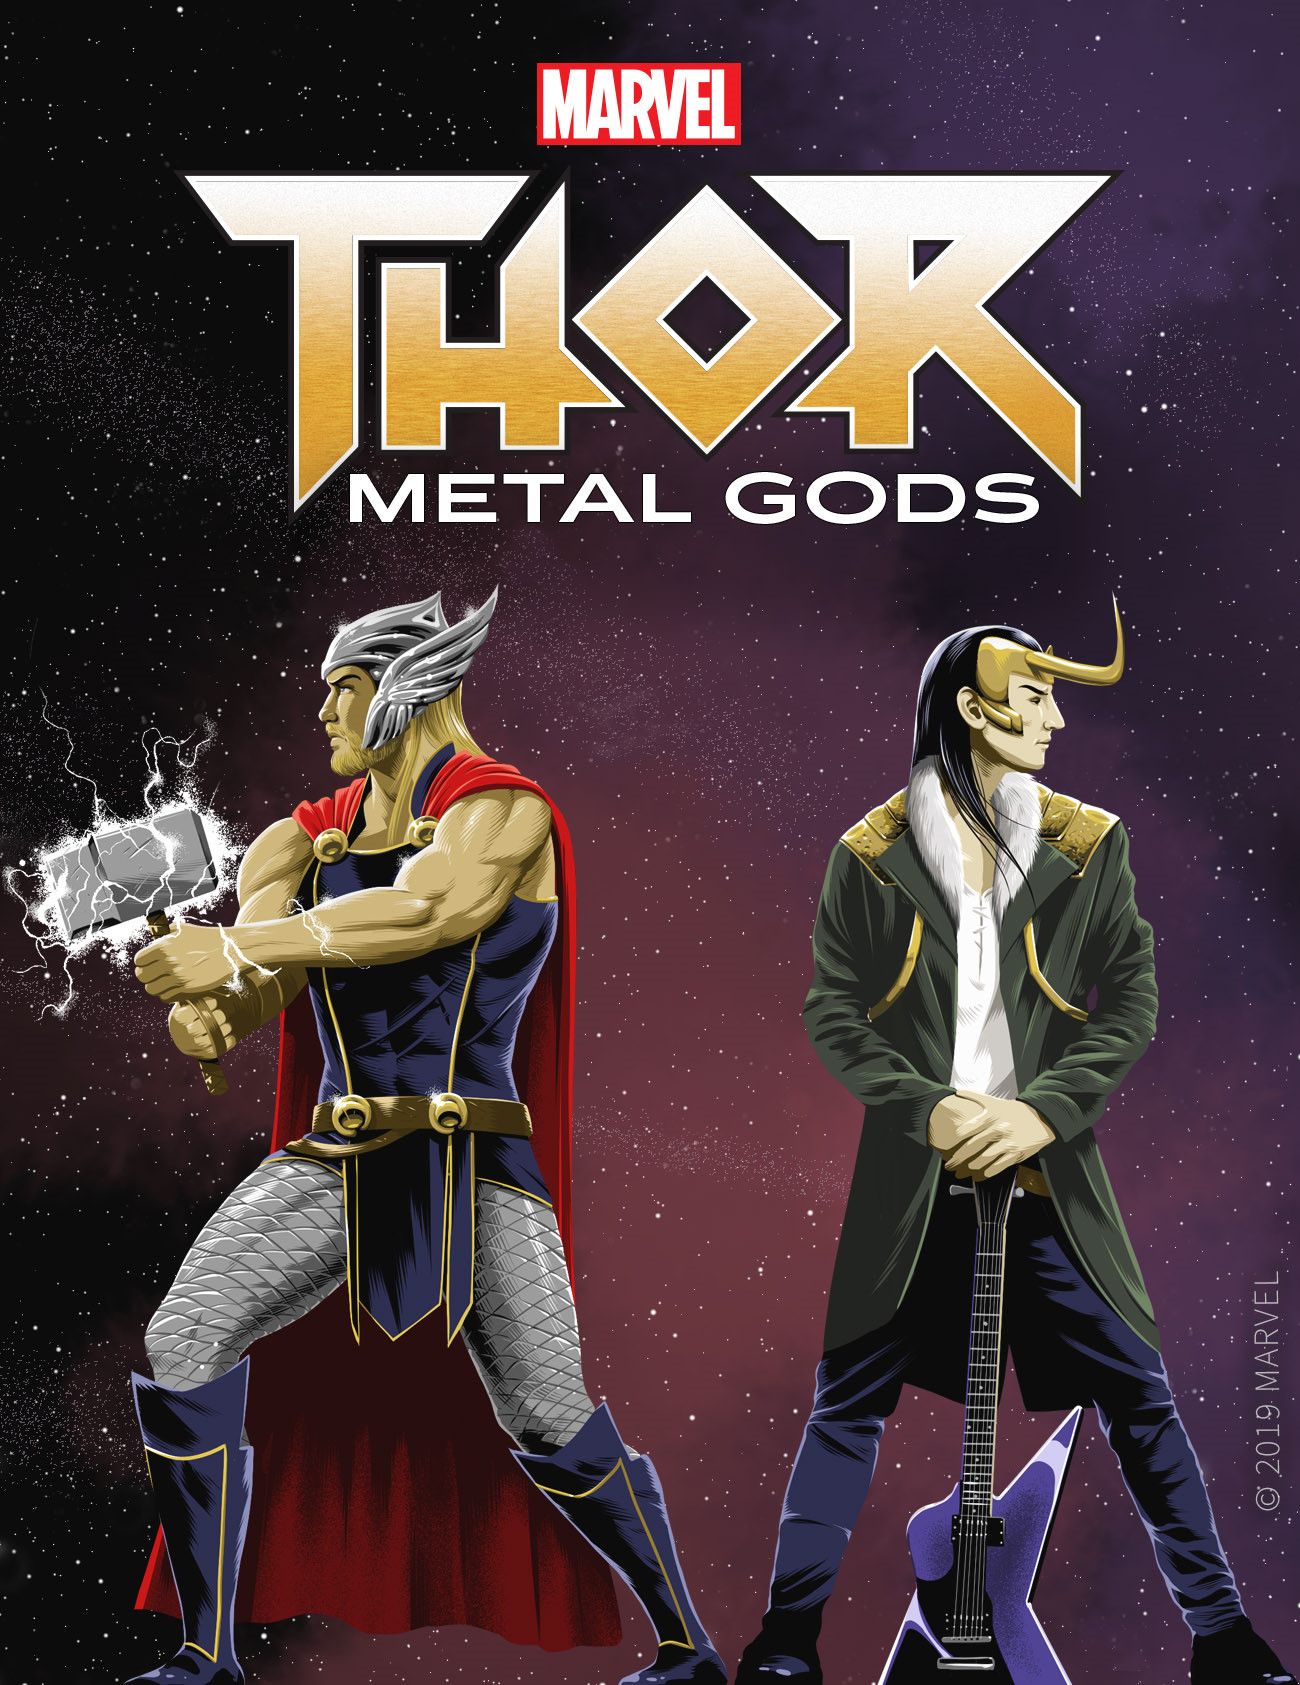 Thor Metal Gods Serial Box Art